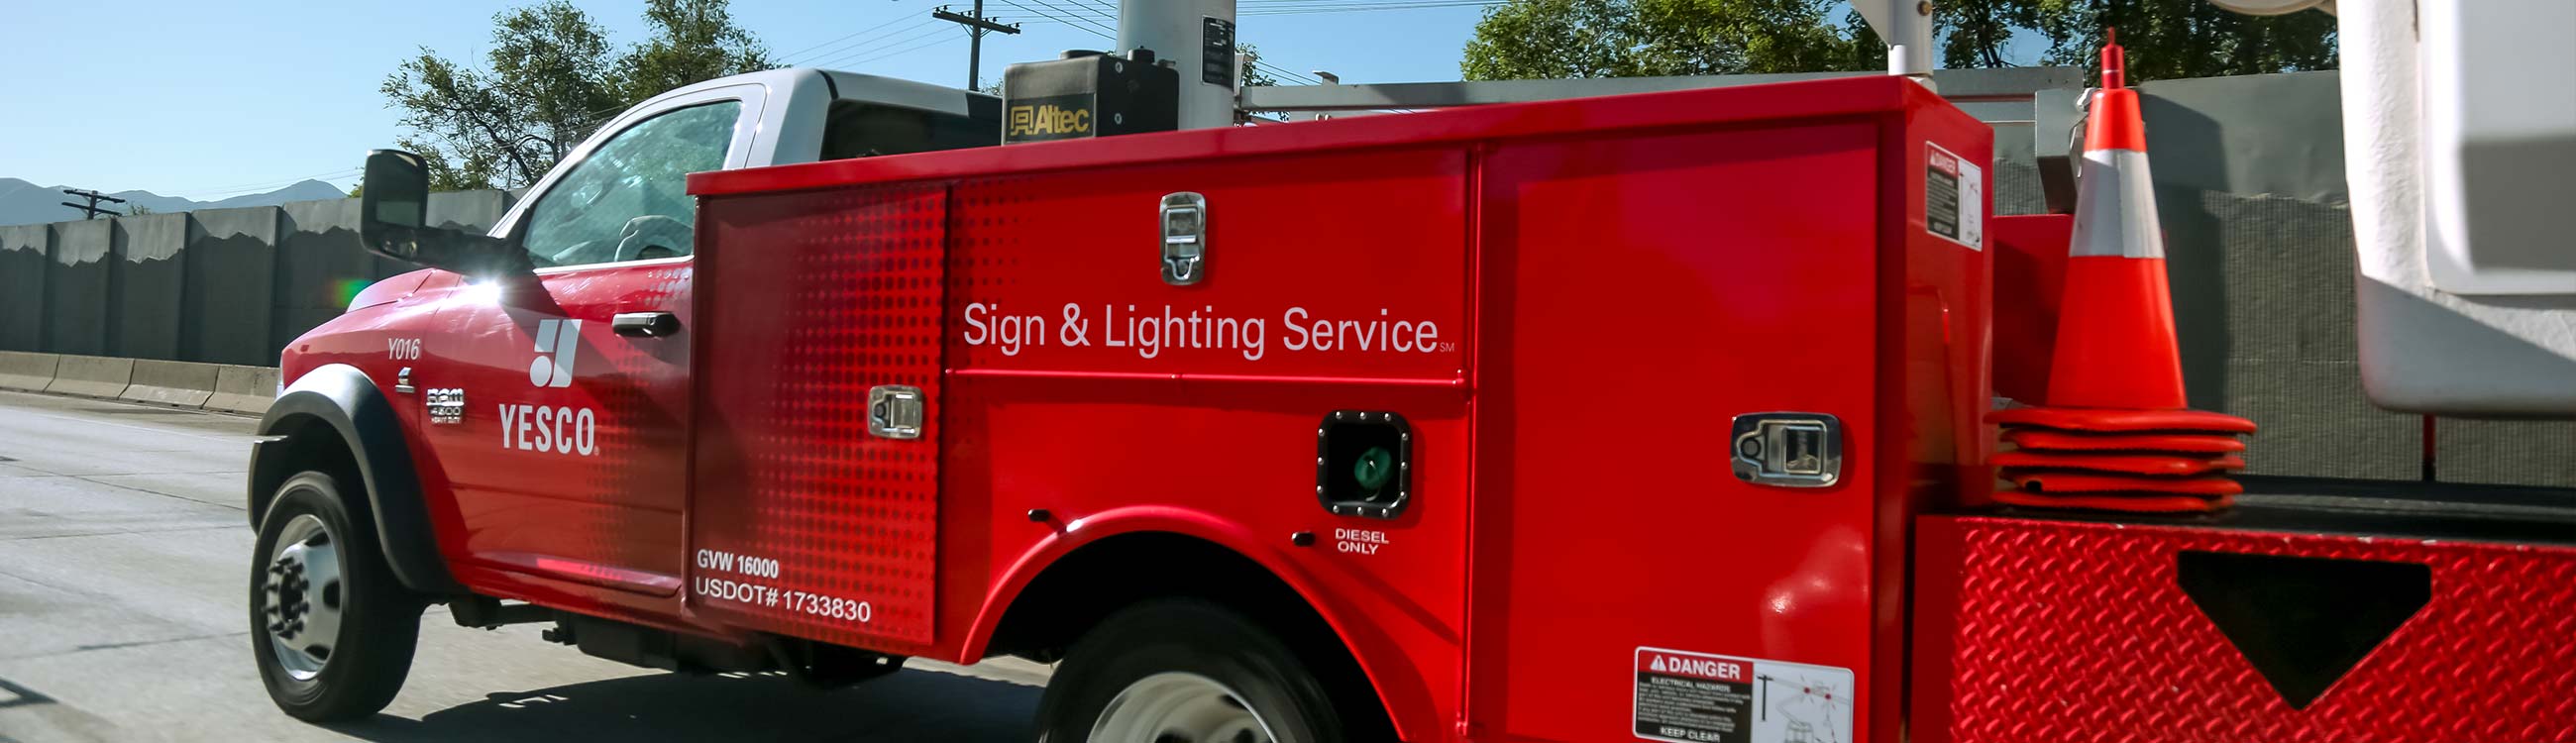 sign&lighting-service-repair